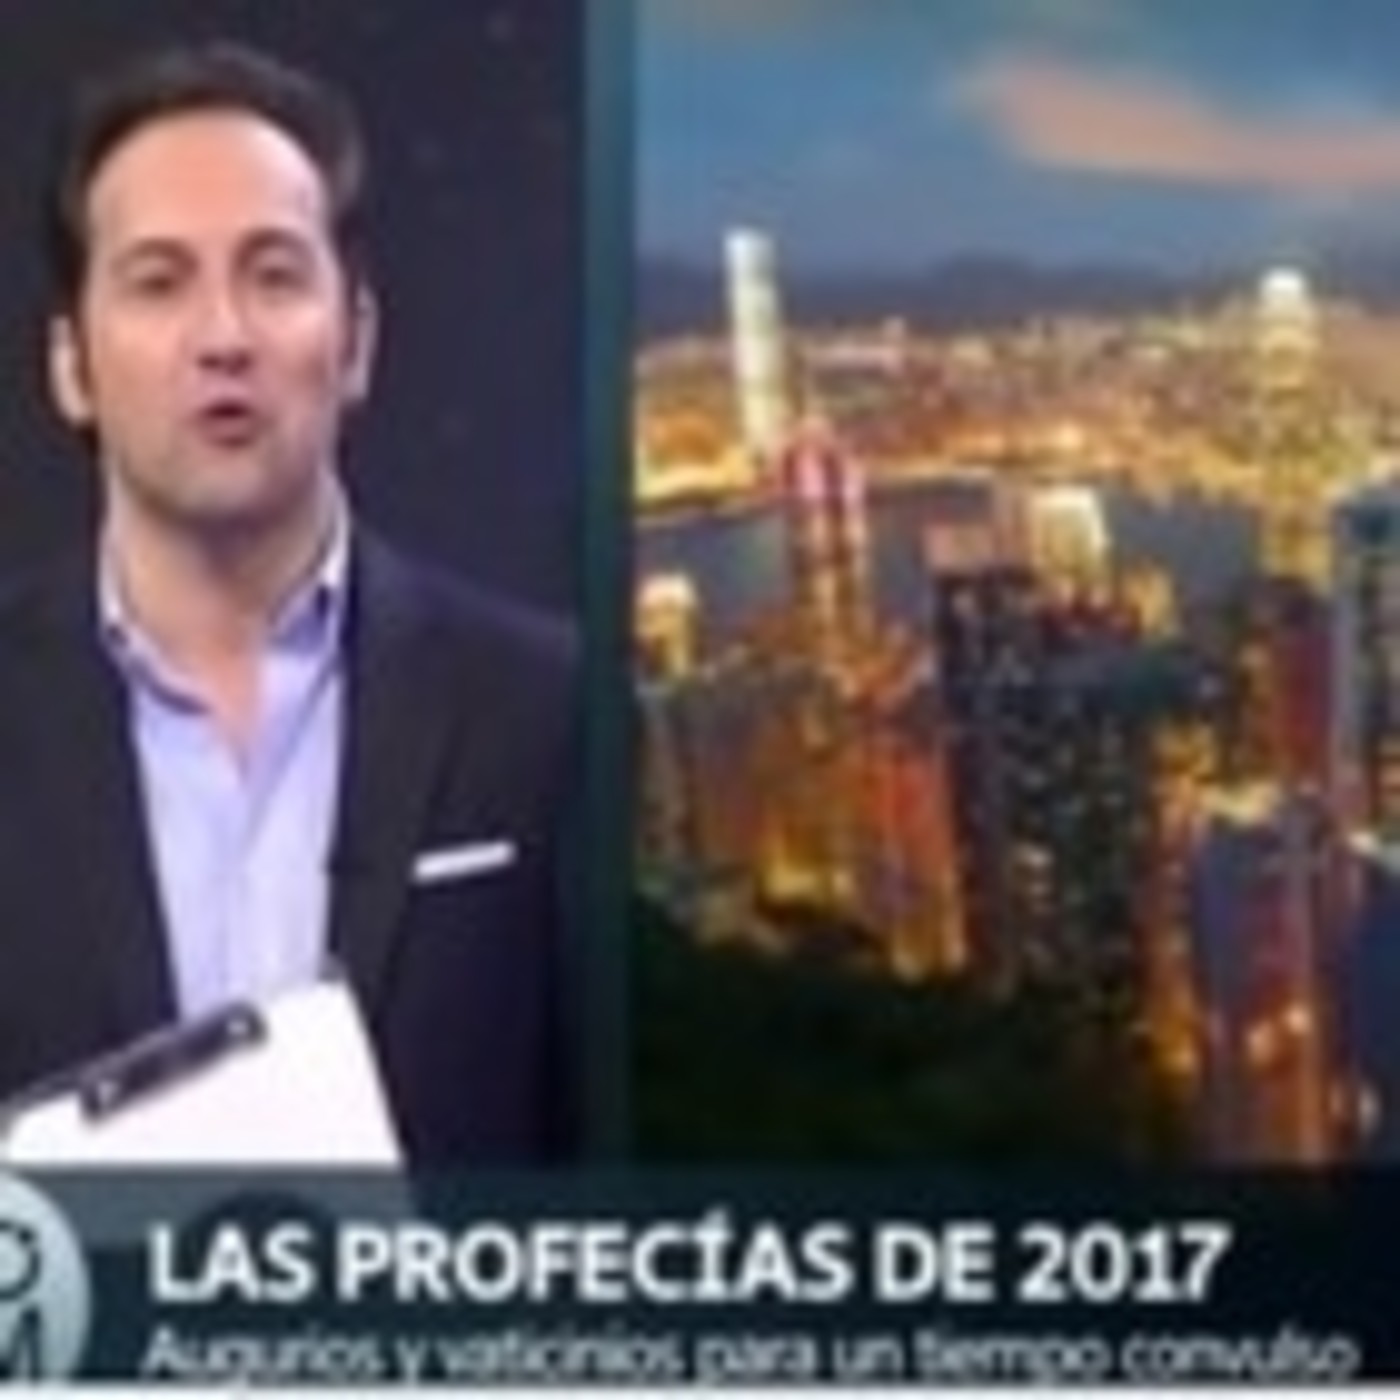 Las profecías de 2017 por Cuarto Milenio